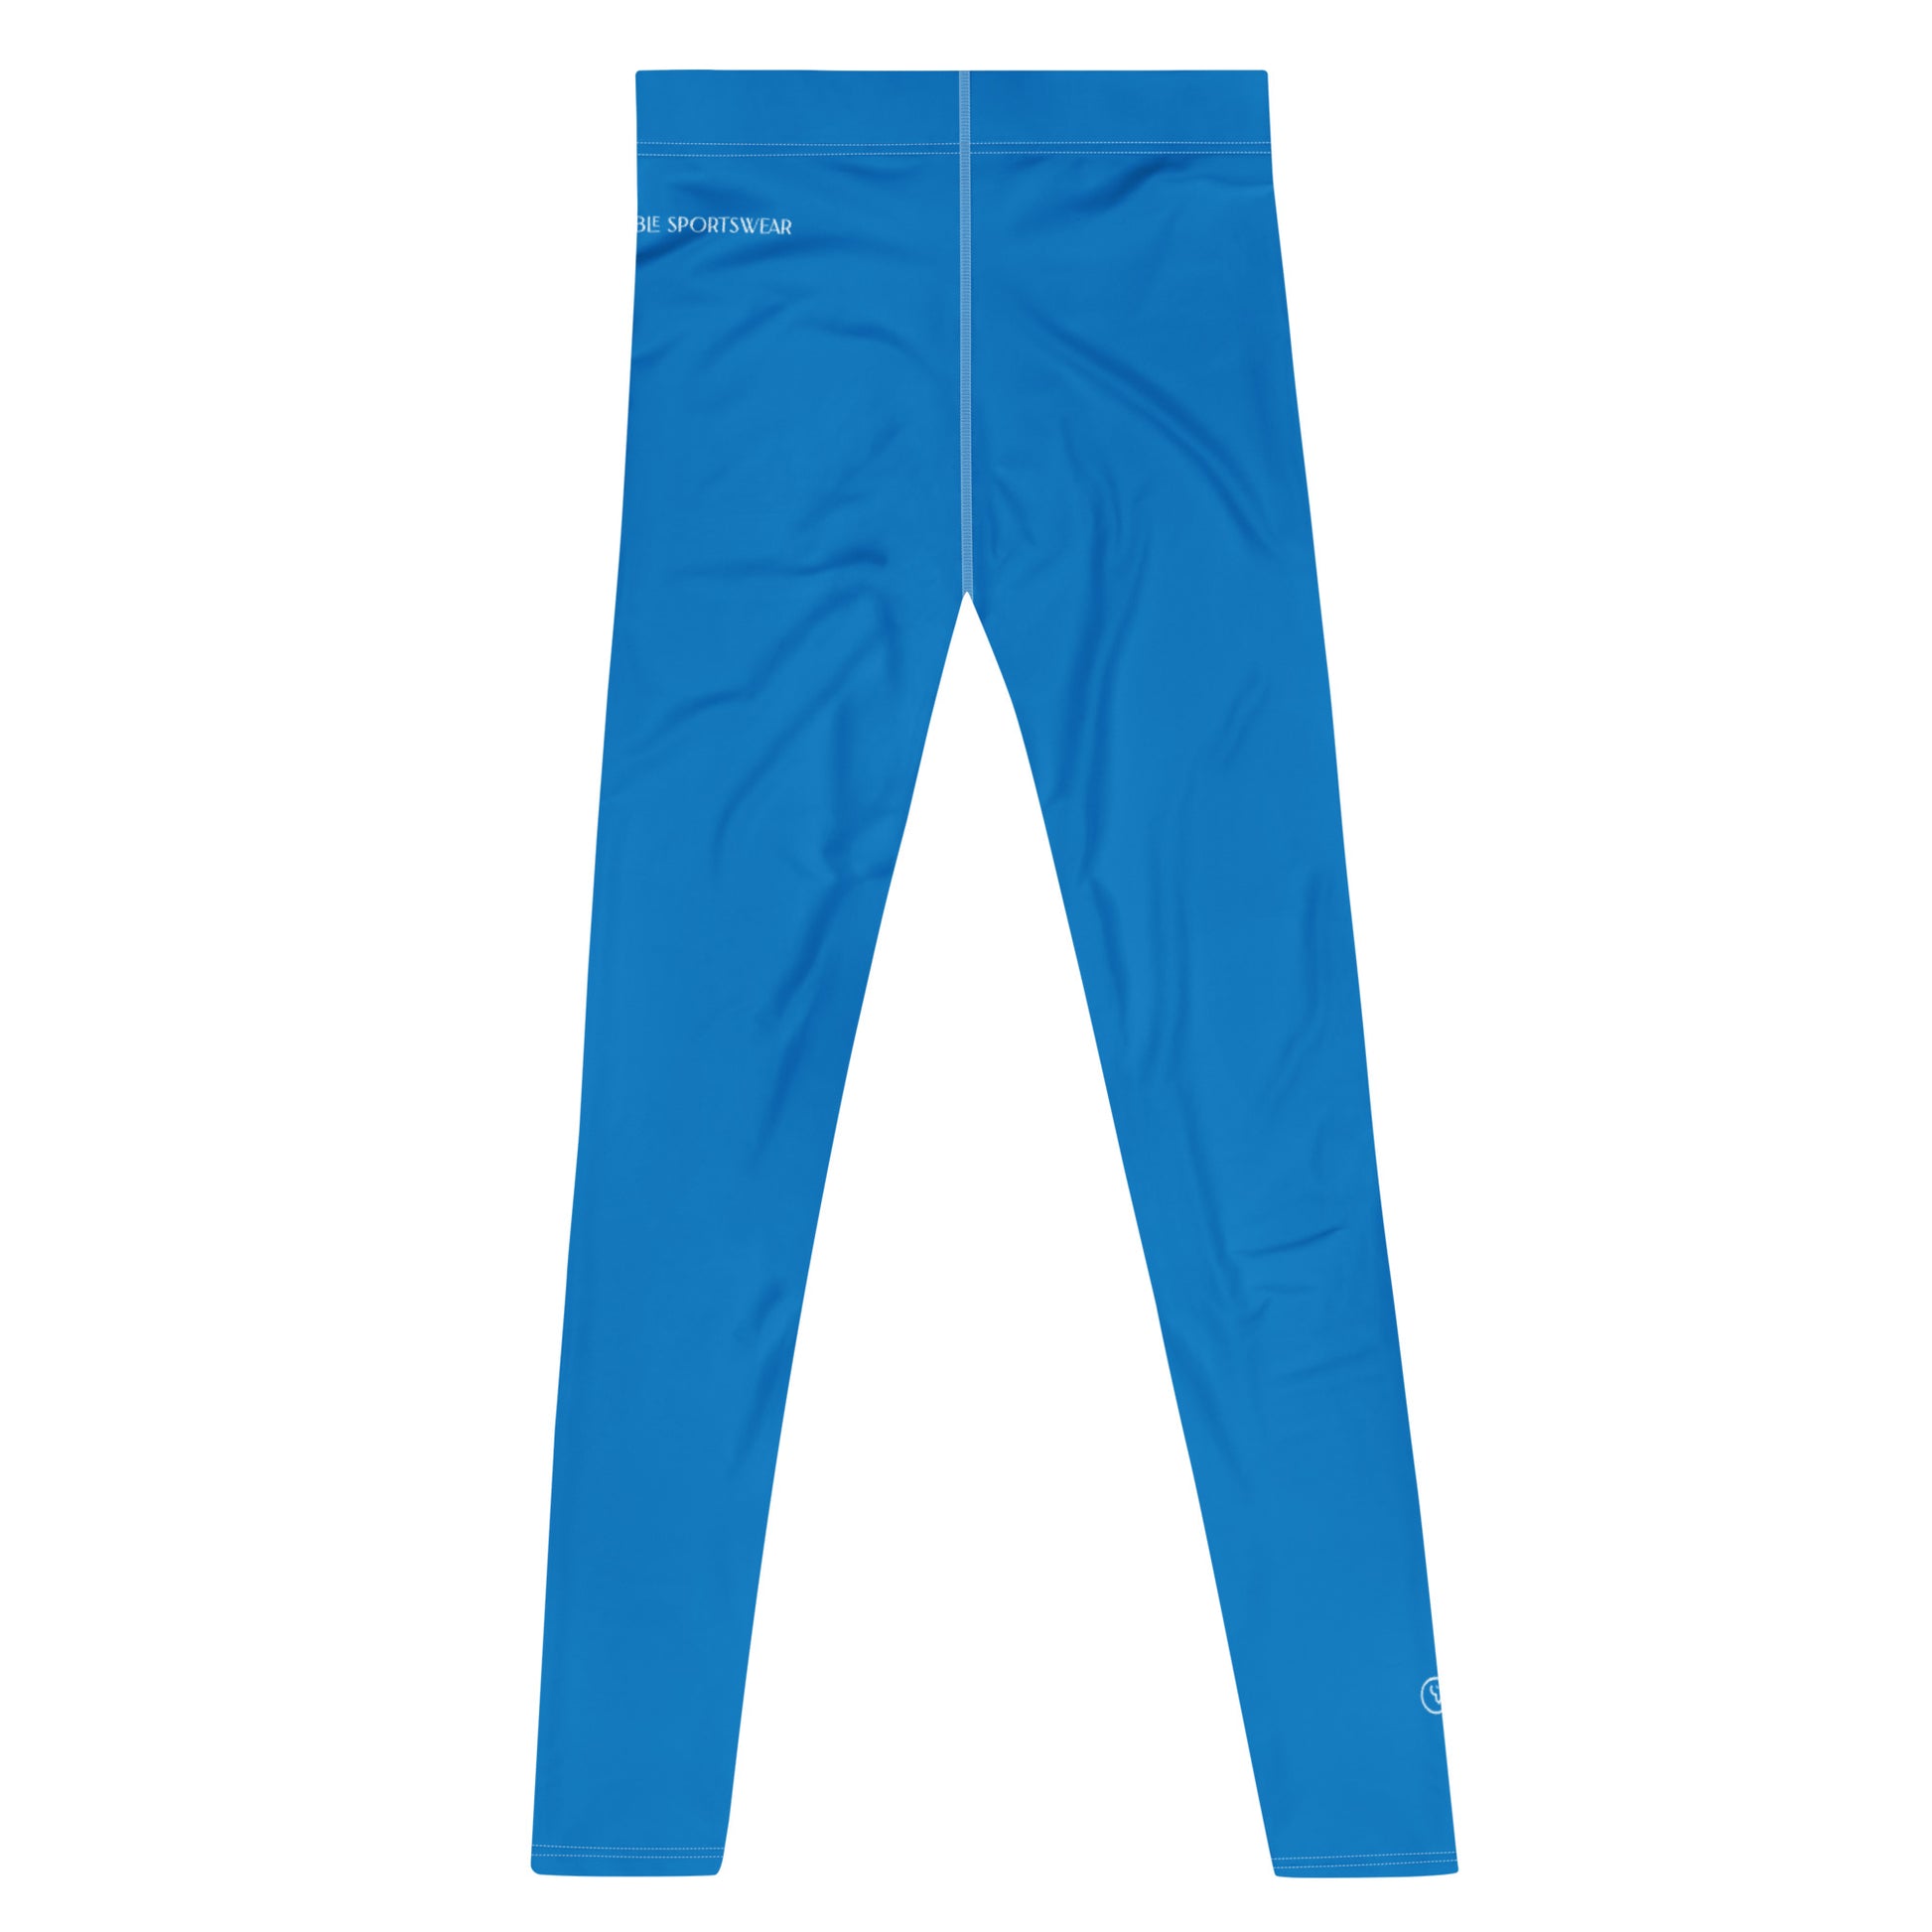 Humble Sportswear, men's color match active compression leggings, lazer blue